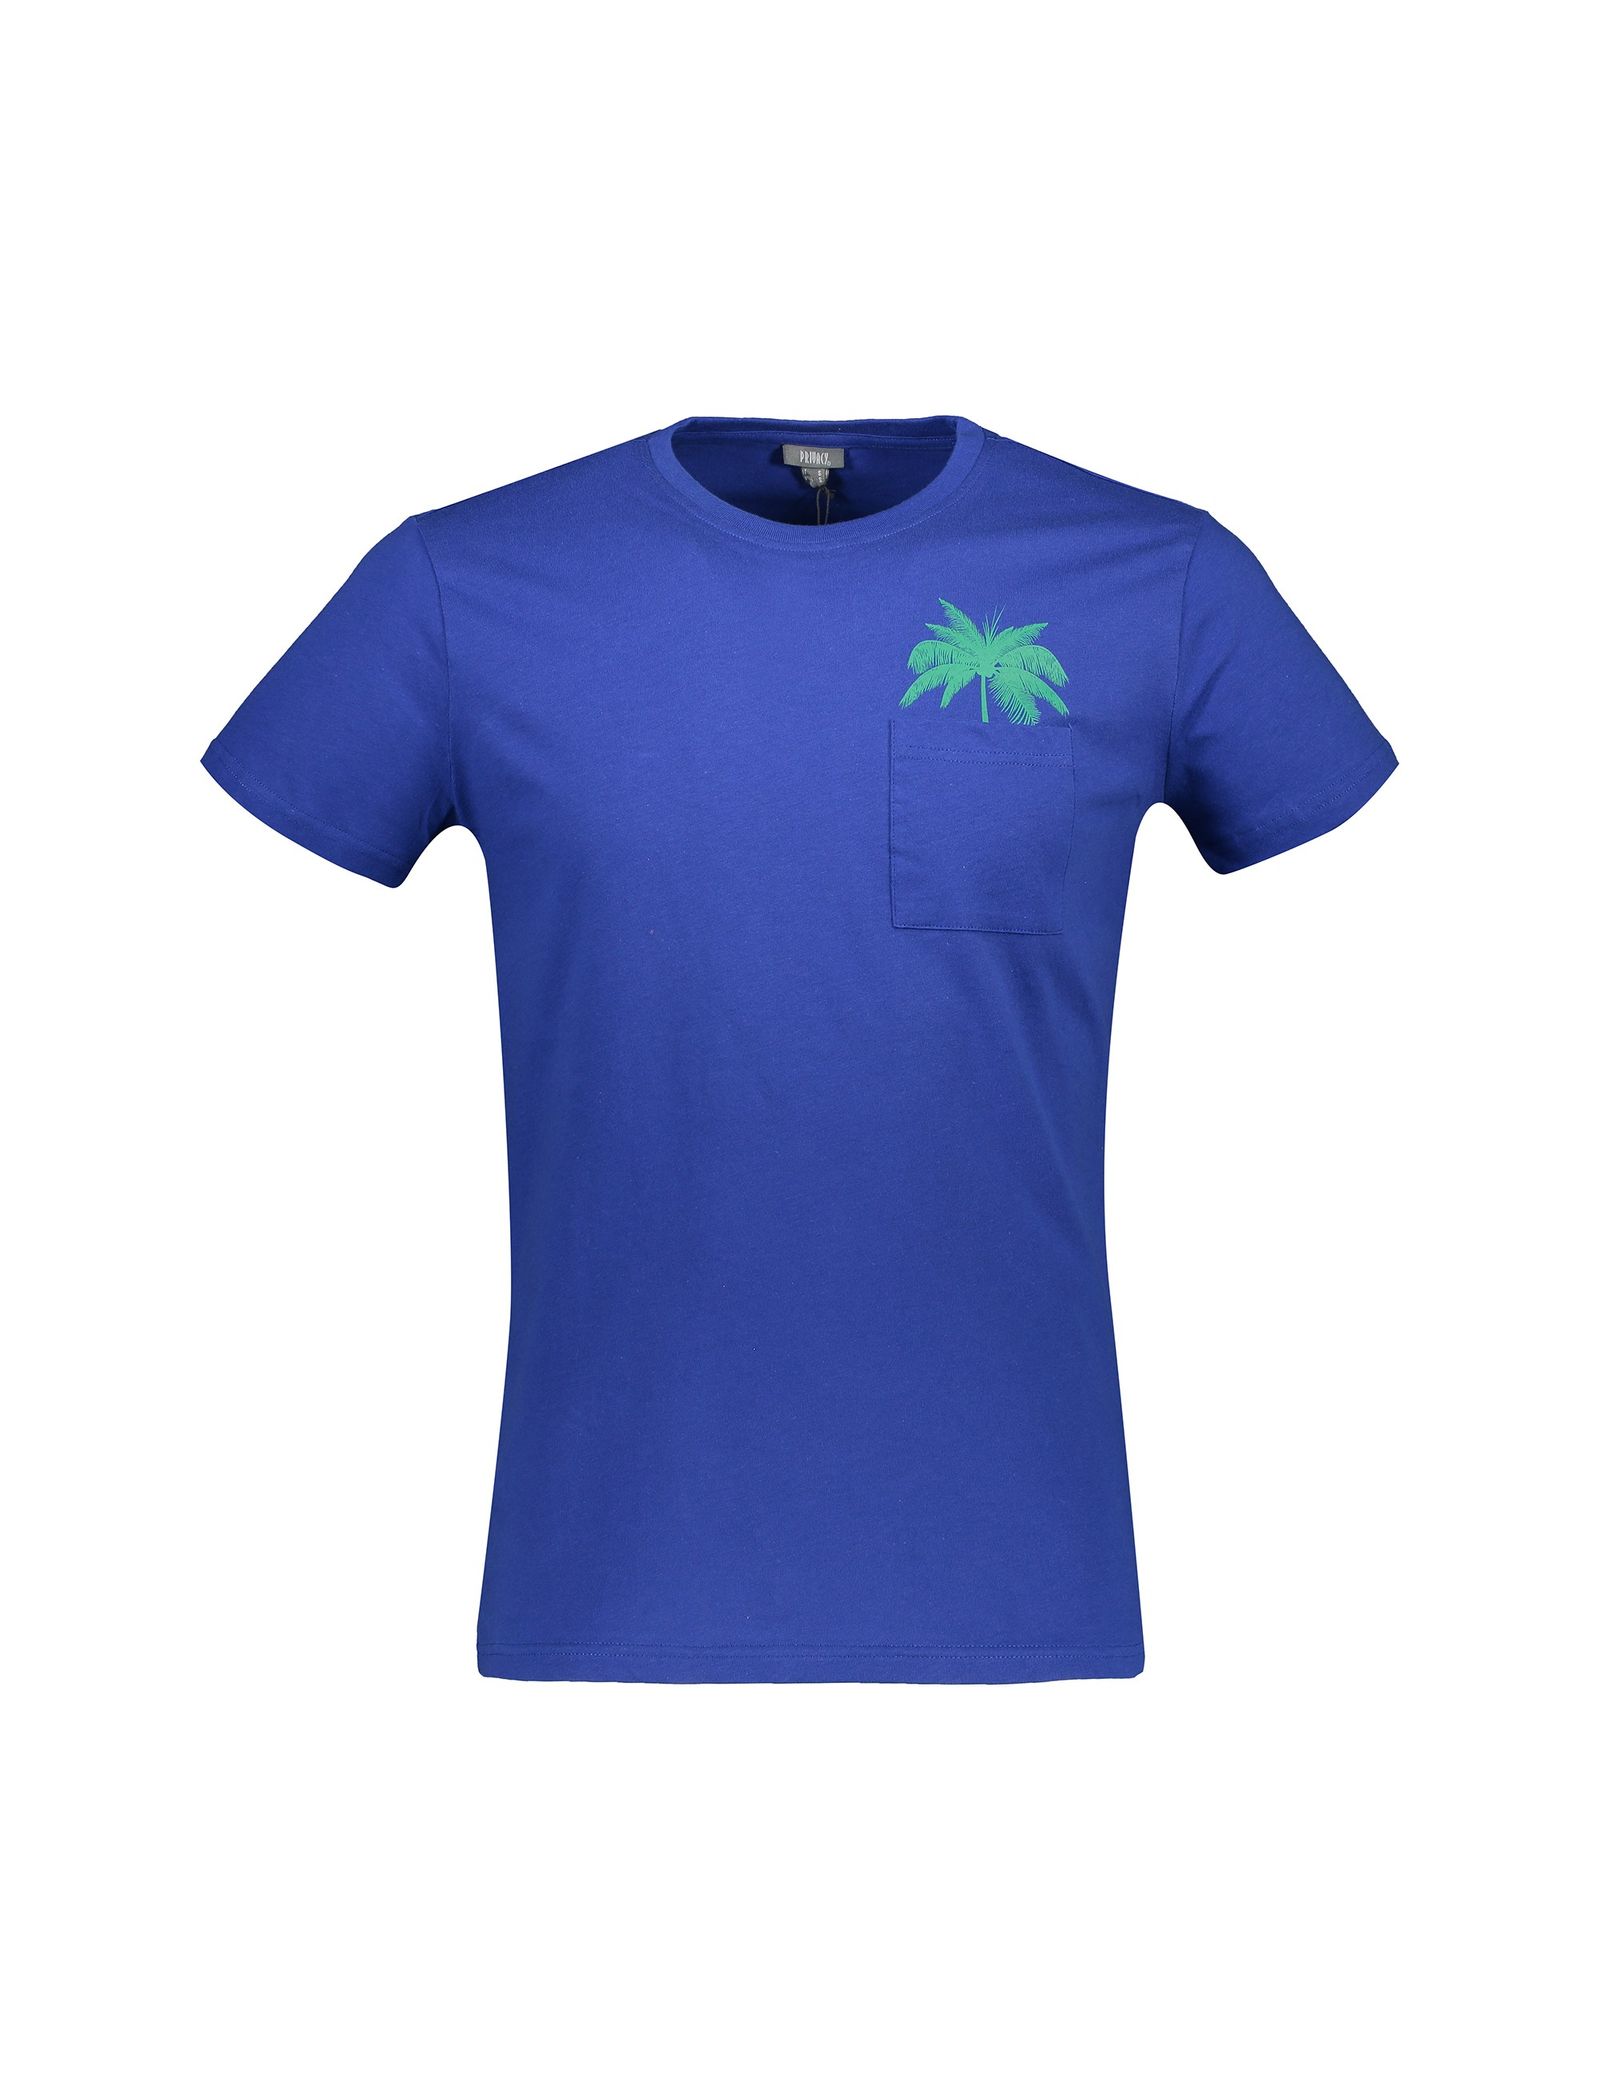 تی شرت و شلوارک نخی مردانه - یوپیم - آبي و سبز - 3